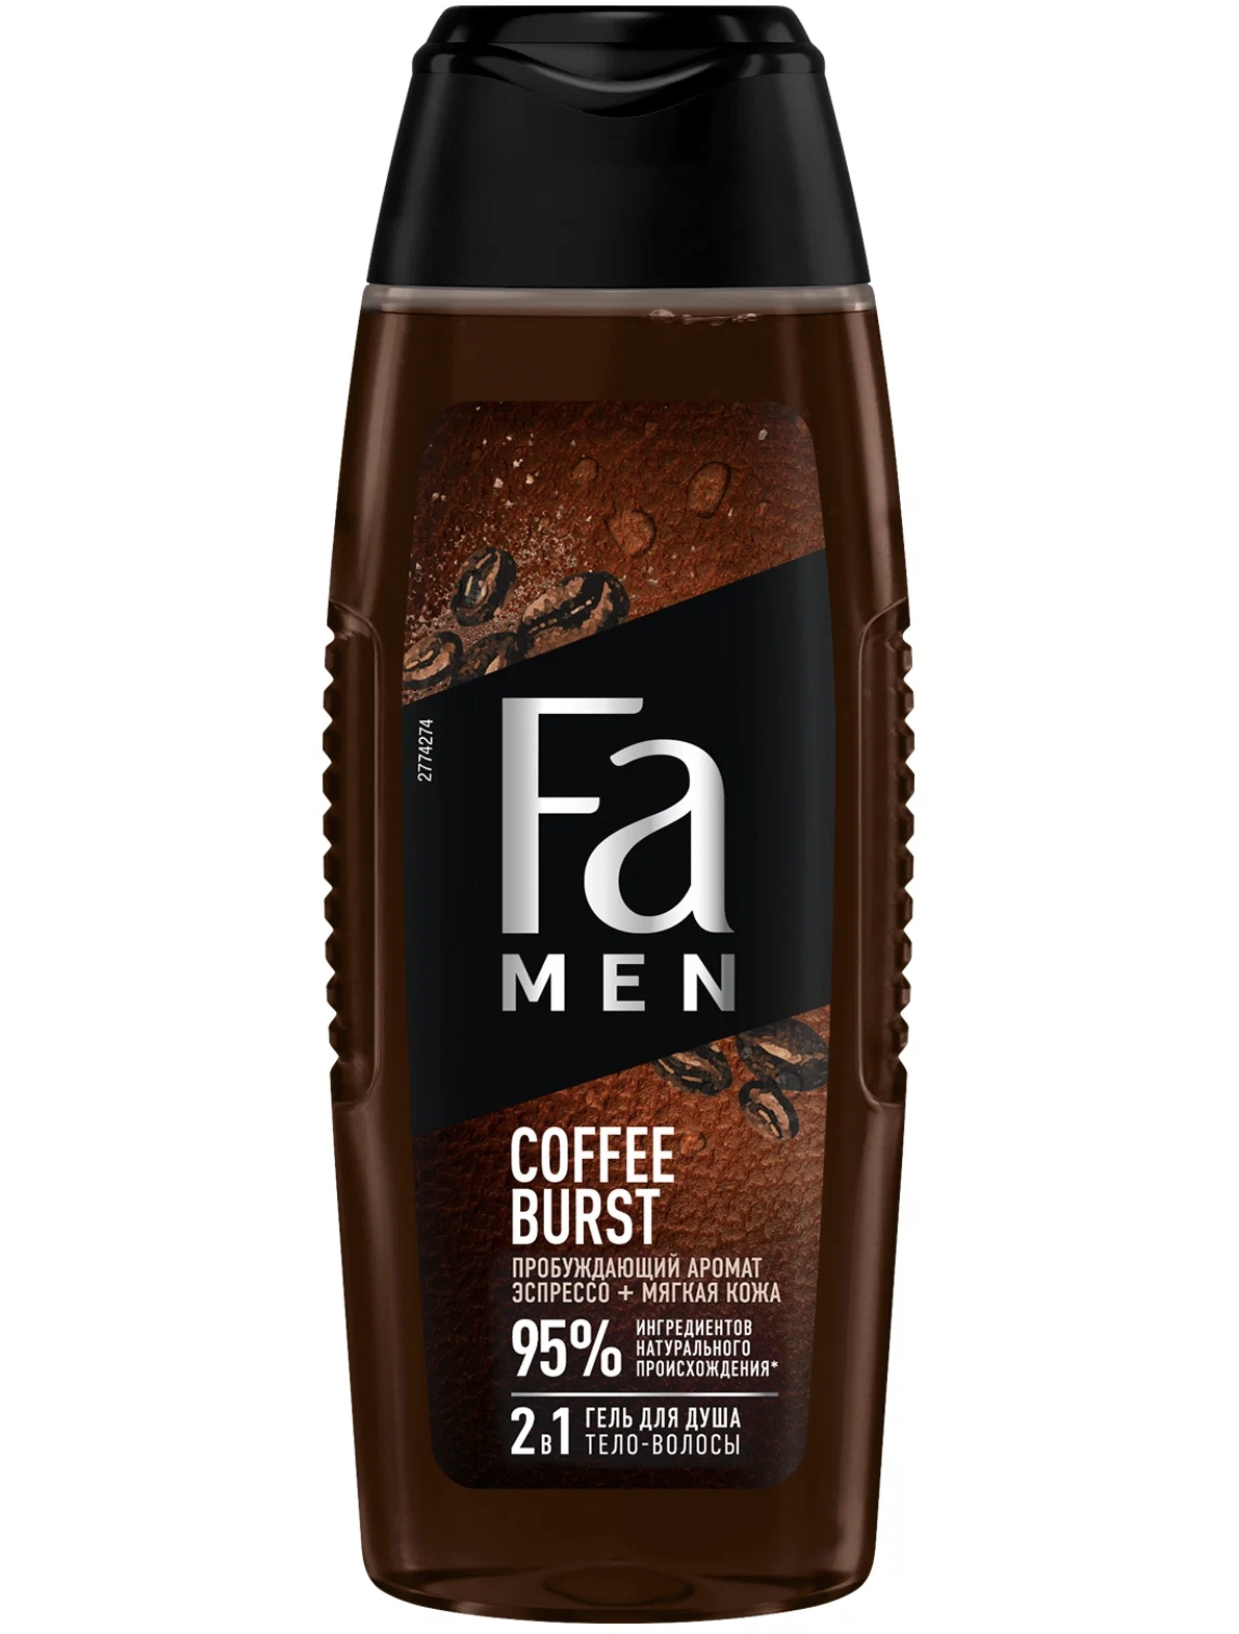   / Fa Men -    21 - Coffee Burst     250 